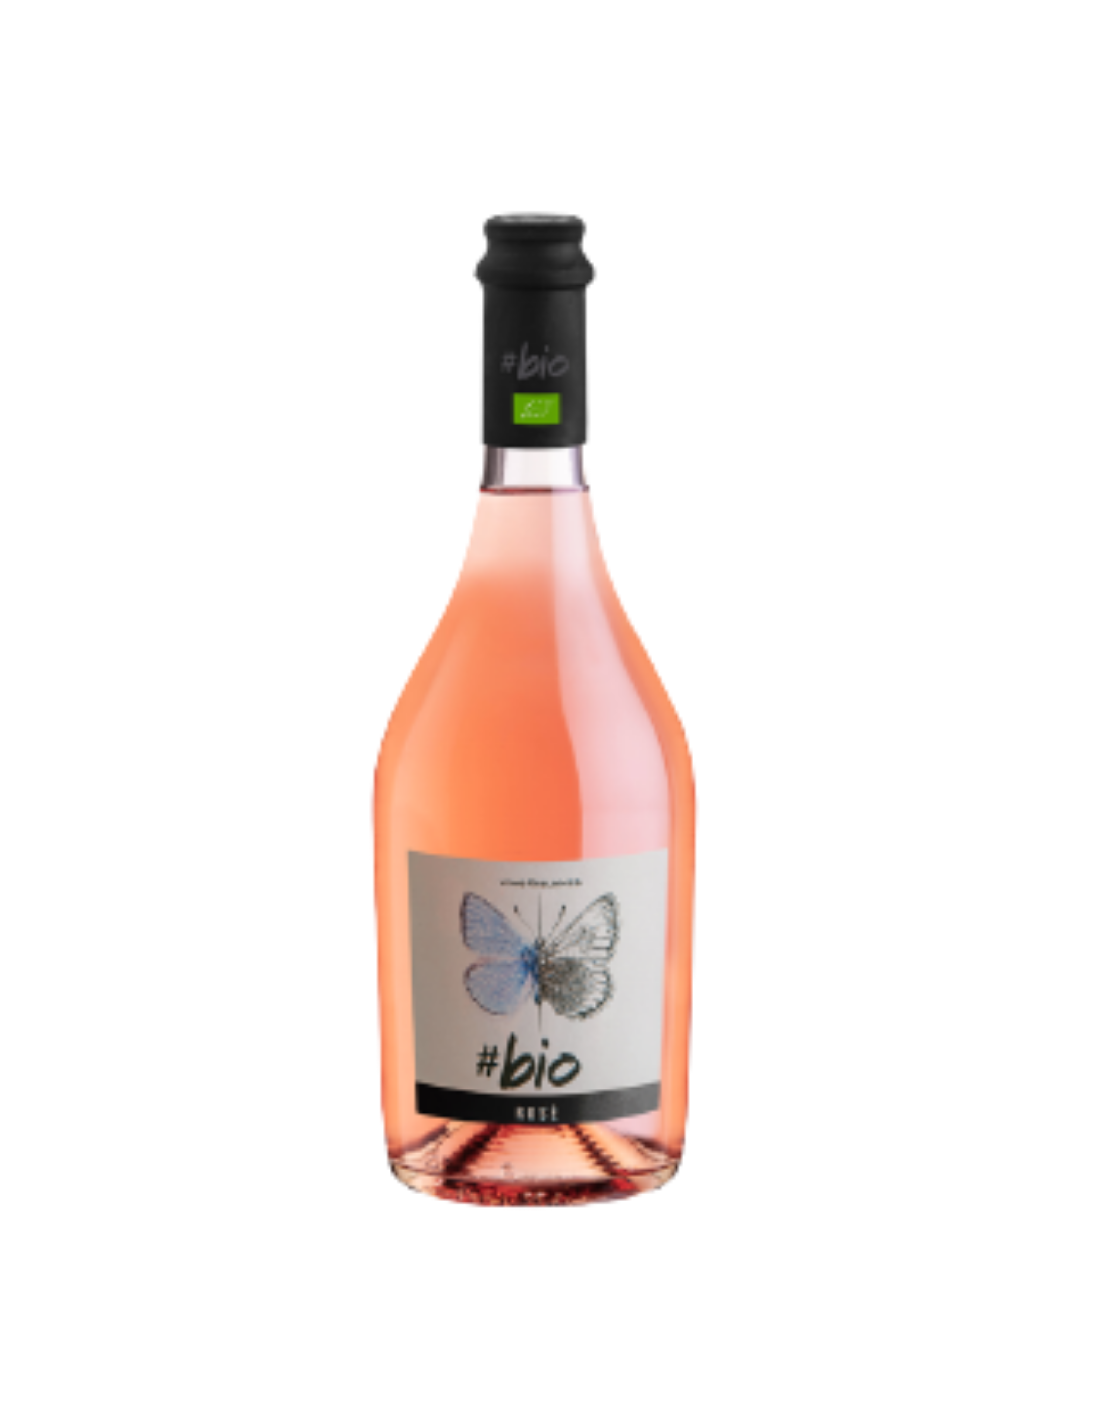 Vin roze organic Bio Bardolino Chiaretto, 0.75L,12.5% alc., Italia alcooldiscount.ro